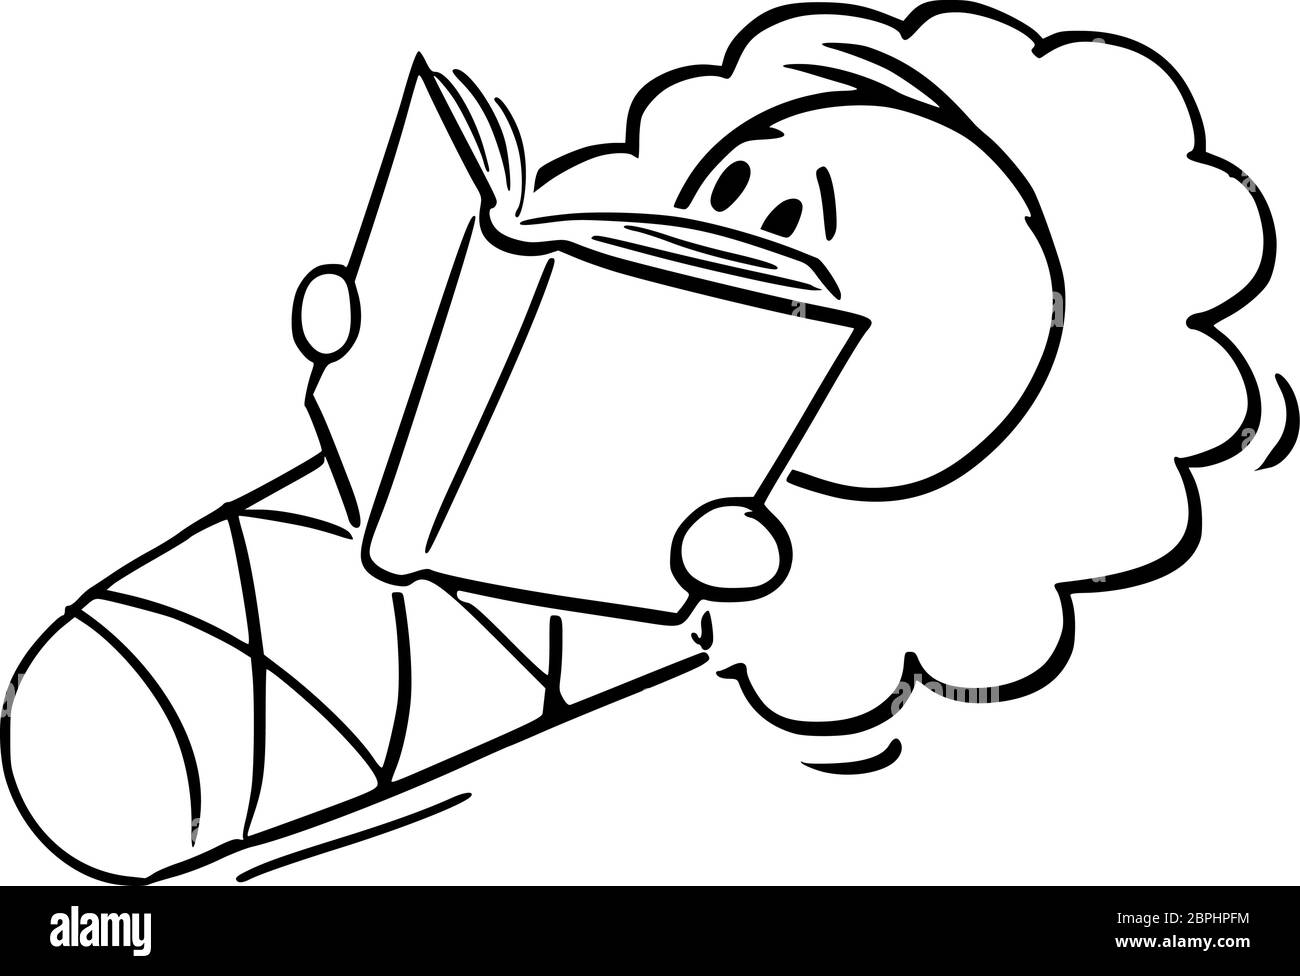 Vektor Cartoon Stick Figur Zeichnung konzeptionelle Illustration von Baby in Wrap oder Swaddle Decke halten, Lesen oder Studium Buch gewickelt. Stock Vektor